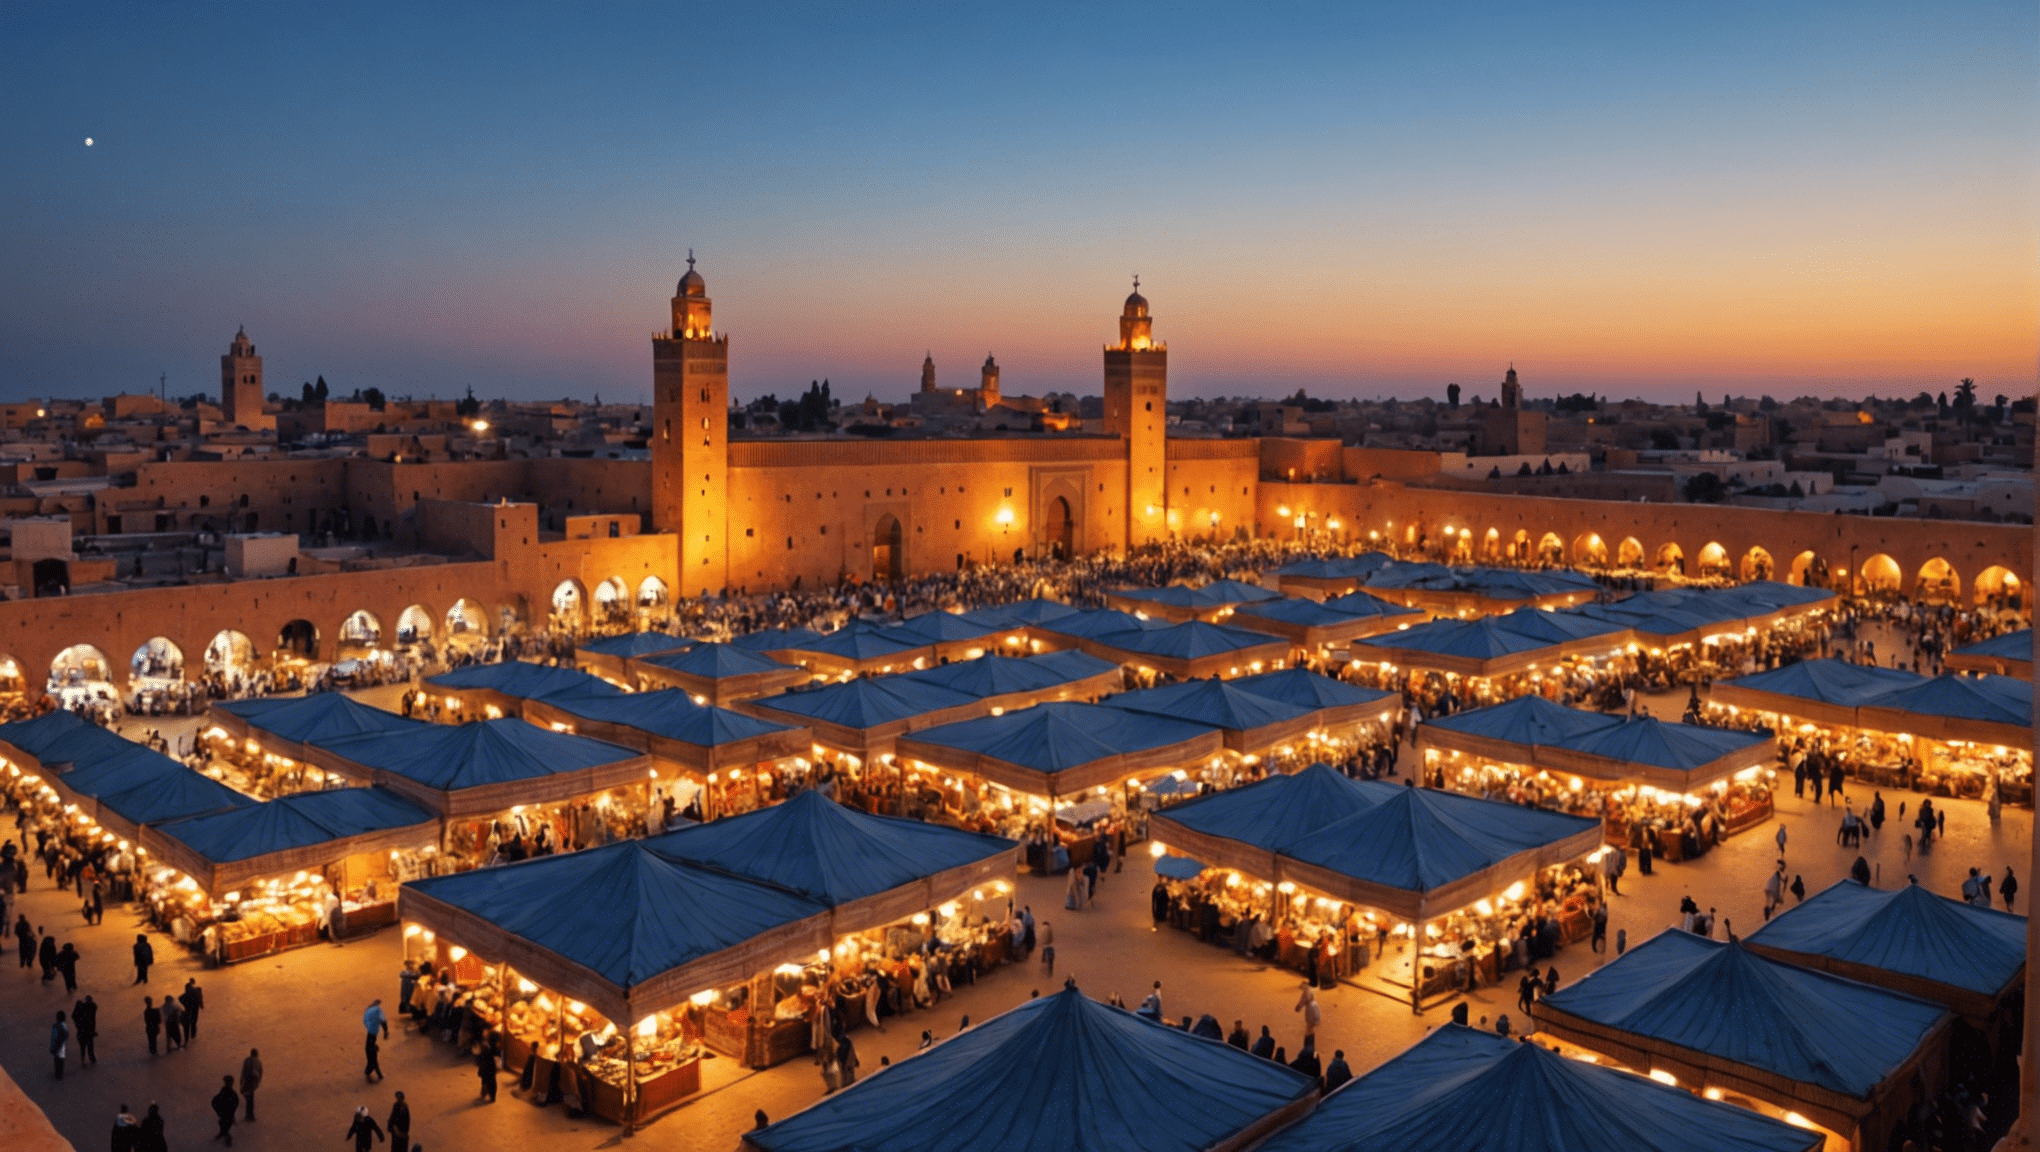 découvrez comment le ramadan est célébré à Marrakech et découvrez les traditions, les coutumes et la cuisine délicieuse de ce mois sacré au Maroc.